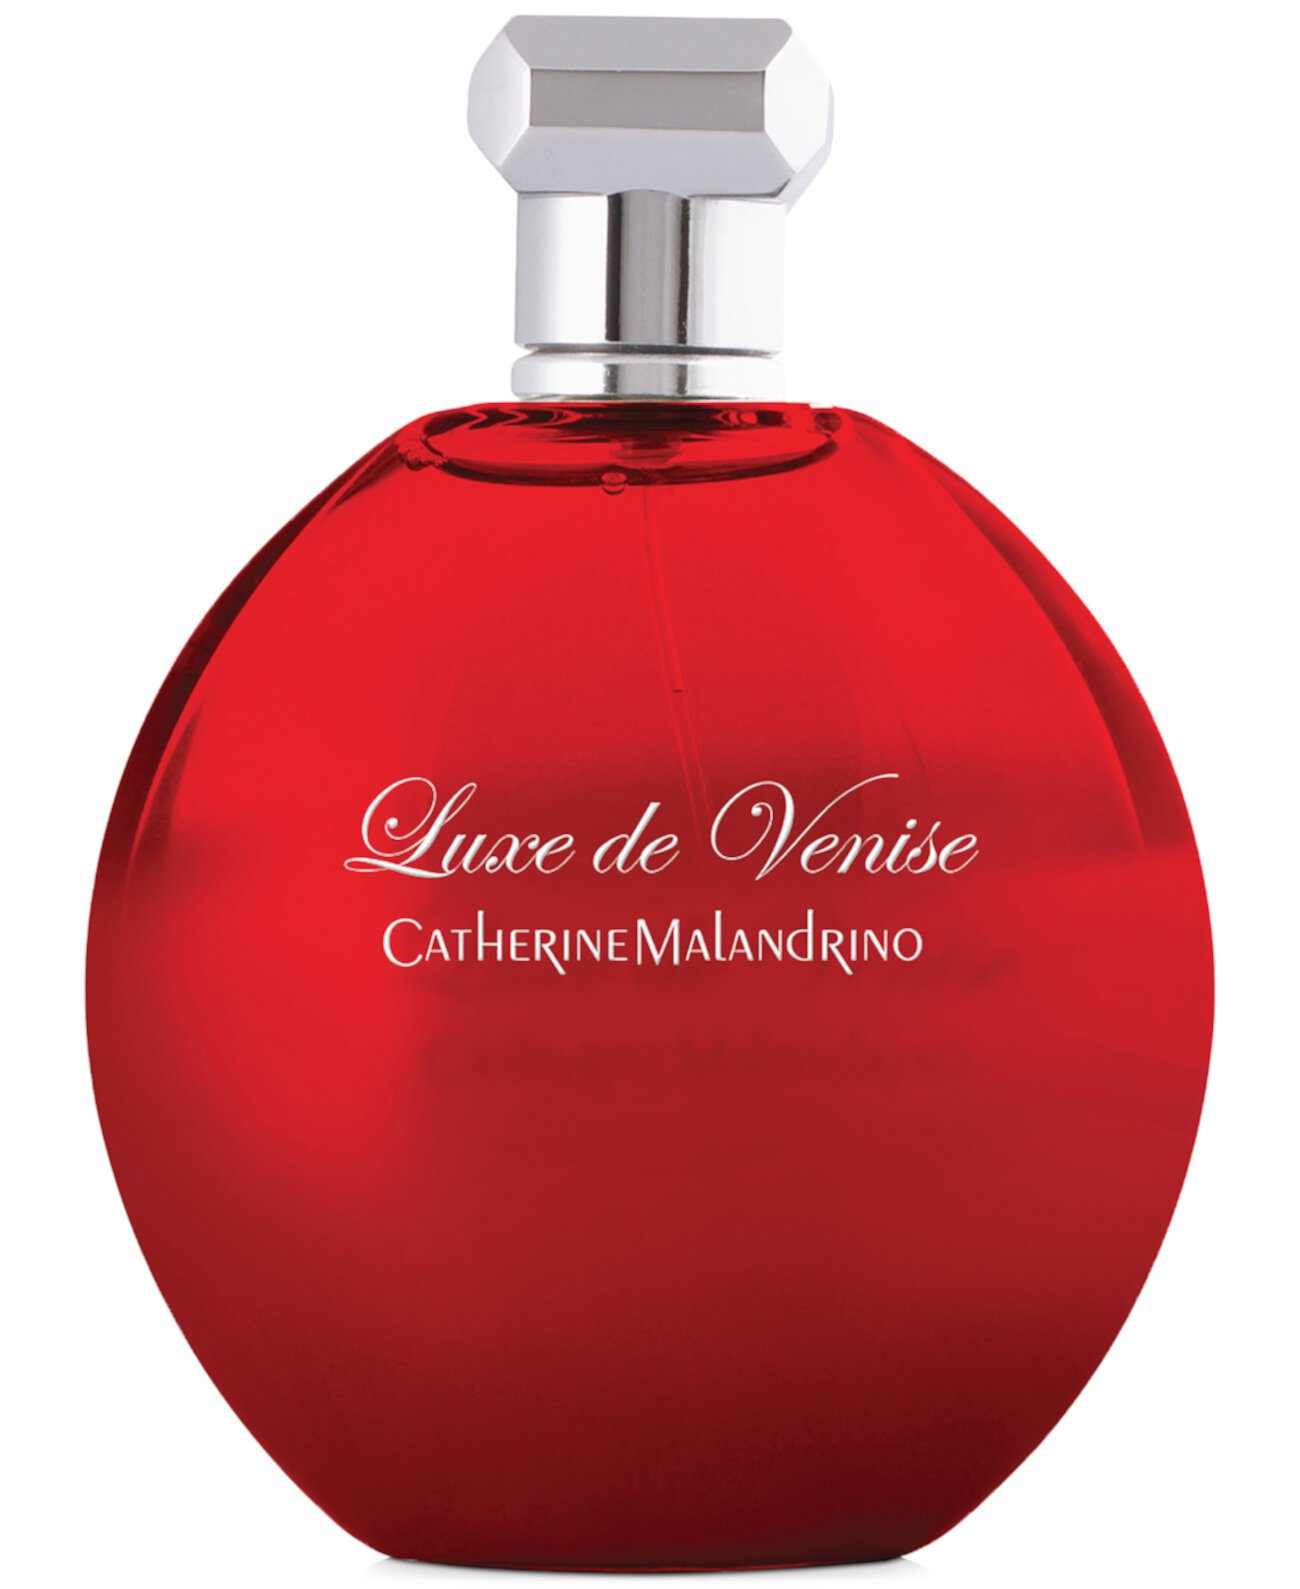 Luxe de Venise Eau de Parfum Spray, 3,4 унции. Catherine Malandrino